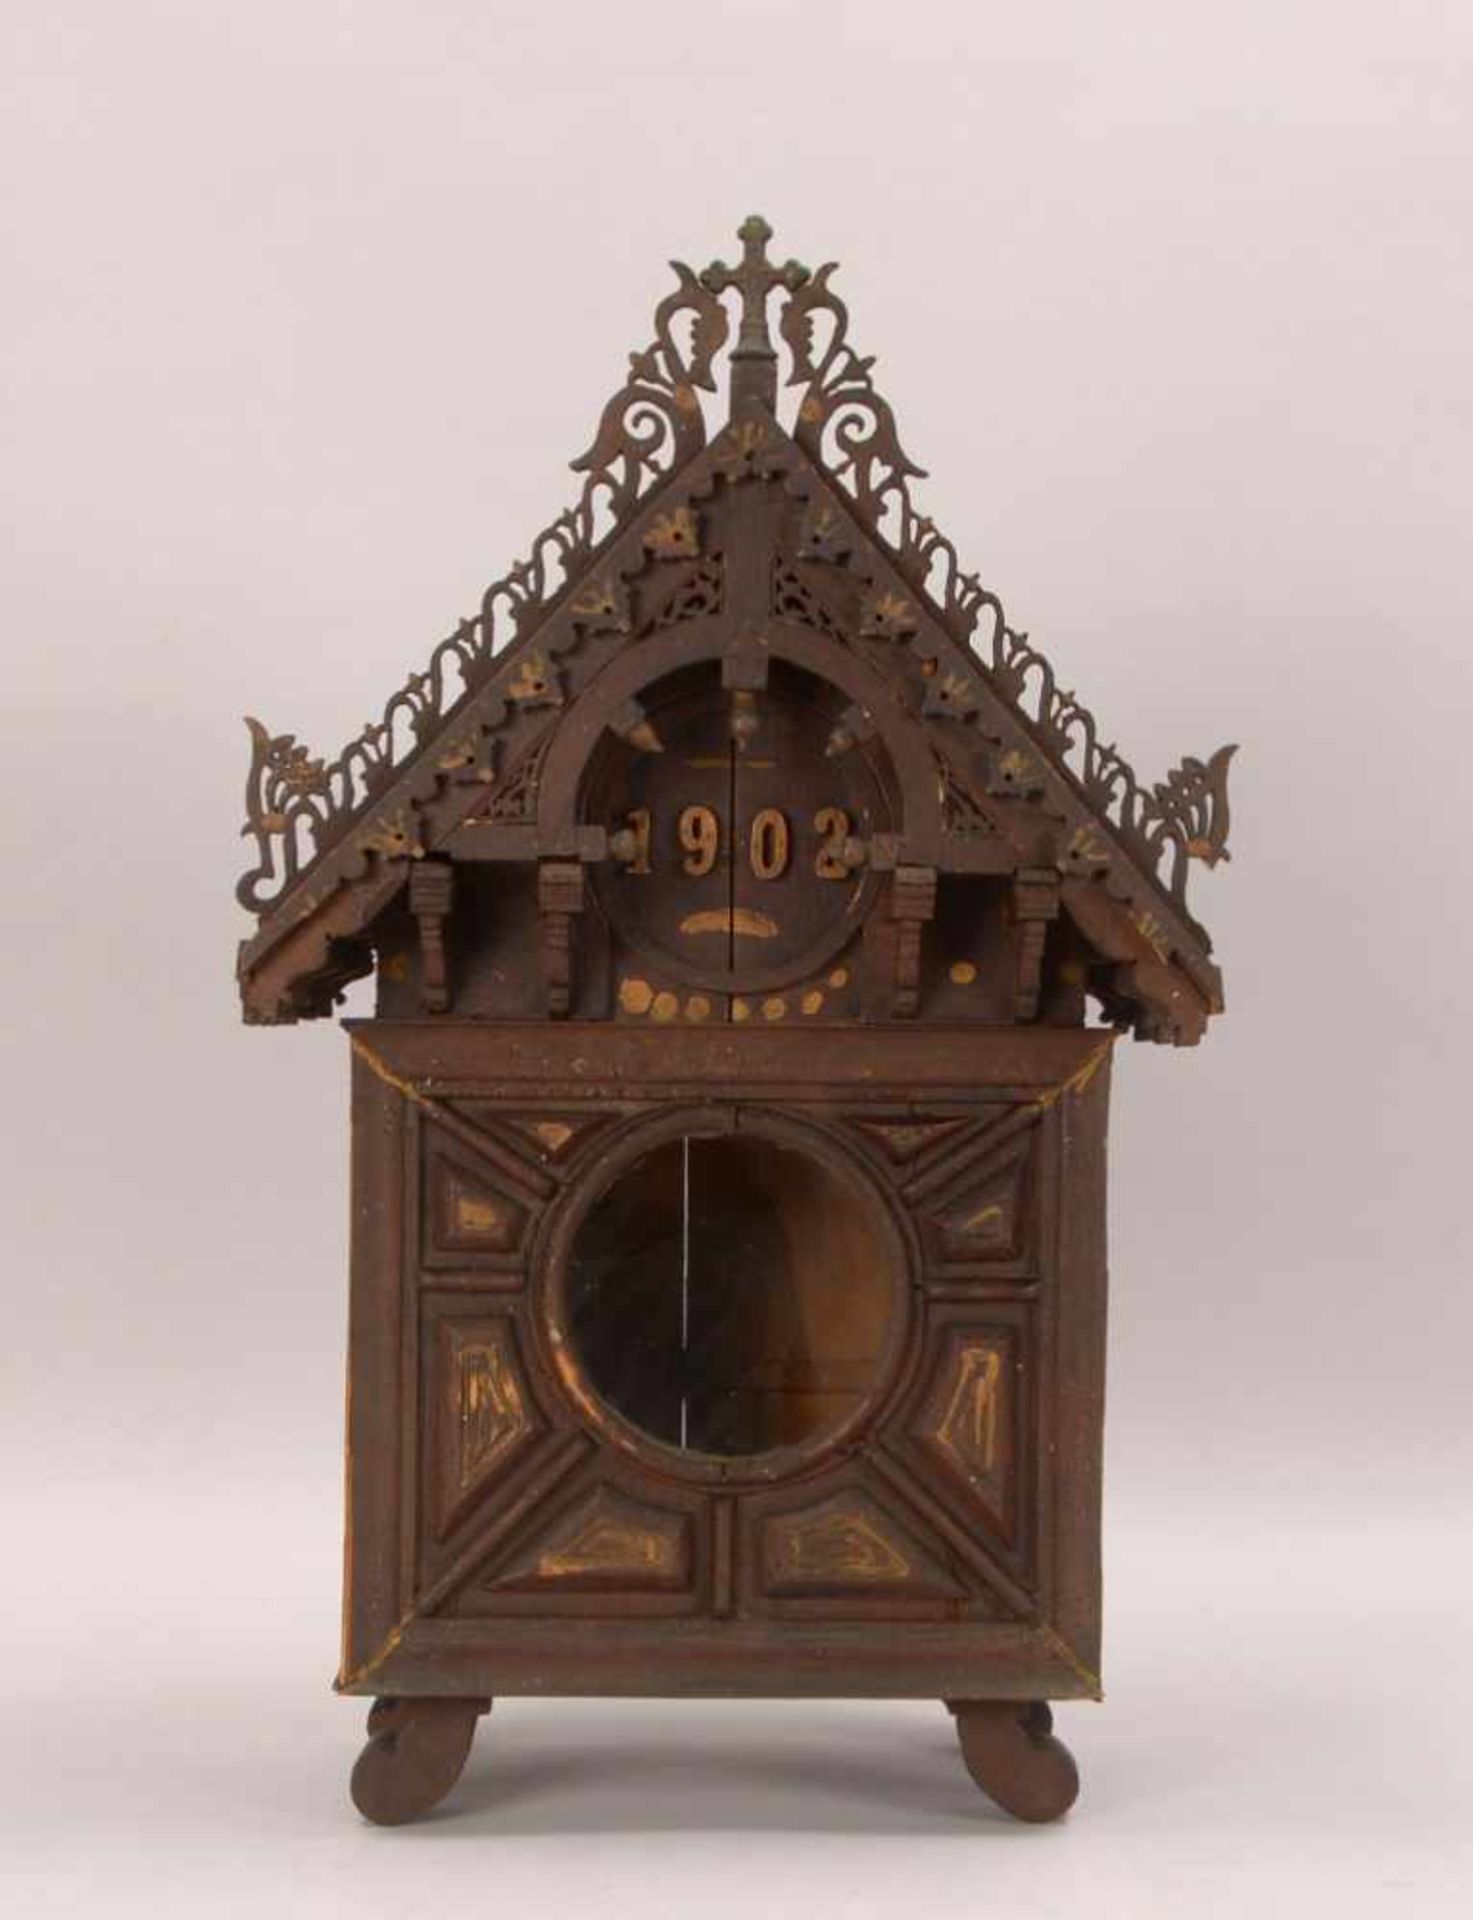 Kleiner Hausaltar, Holz, mit Frontverglasung, Giebel mit Verzierungen, datiert '1902', rückseitig